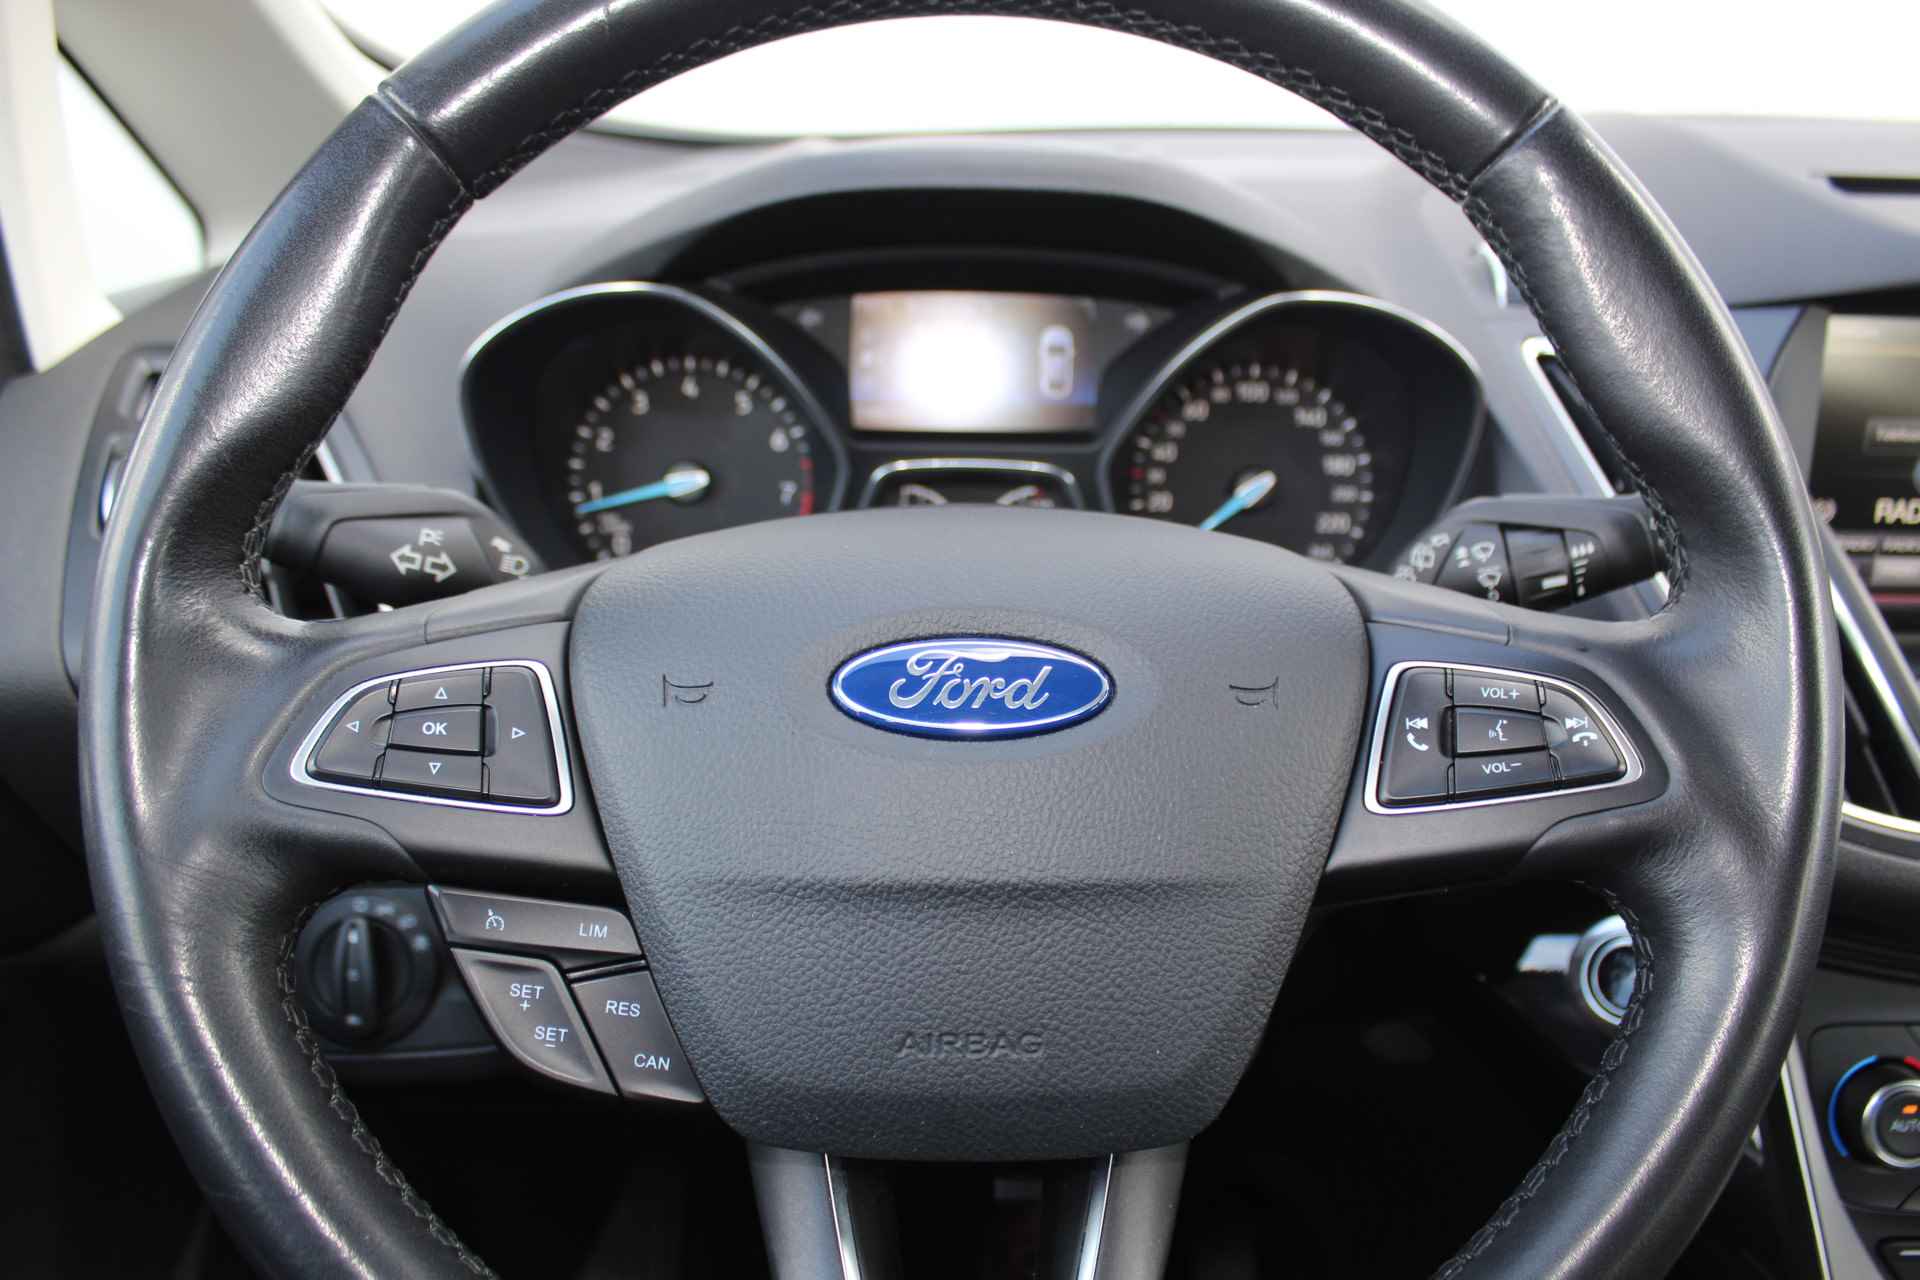 Ford C-MAX 1.0-125pk Titanium. Uiterst nette wagen, hoge/comfortabele in- en uitstap. Volautm. airco dual, cruise cntrl, trekhaak, metallic lak, parkeersensoren v+a etc.LM wielen, multi functioneel stuurwiel, verwarmd voorraam, inklapbare spiegels etc. - 19/43